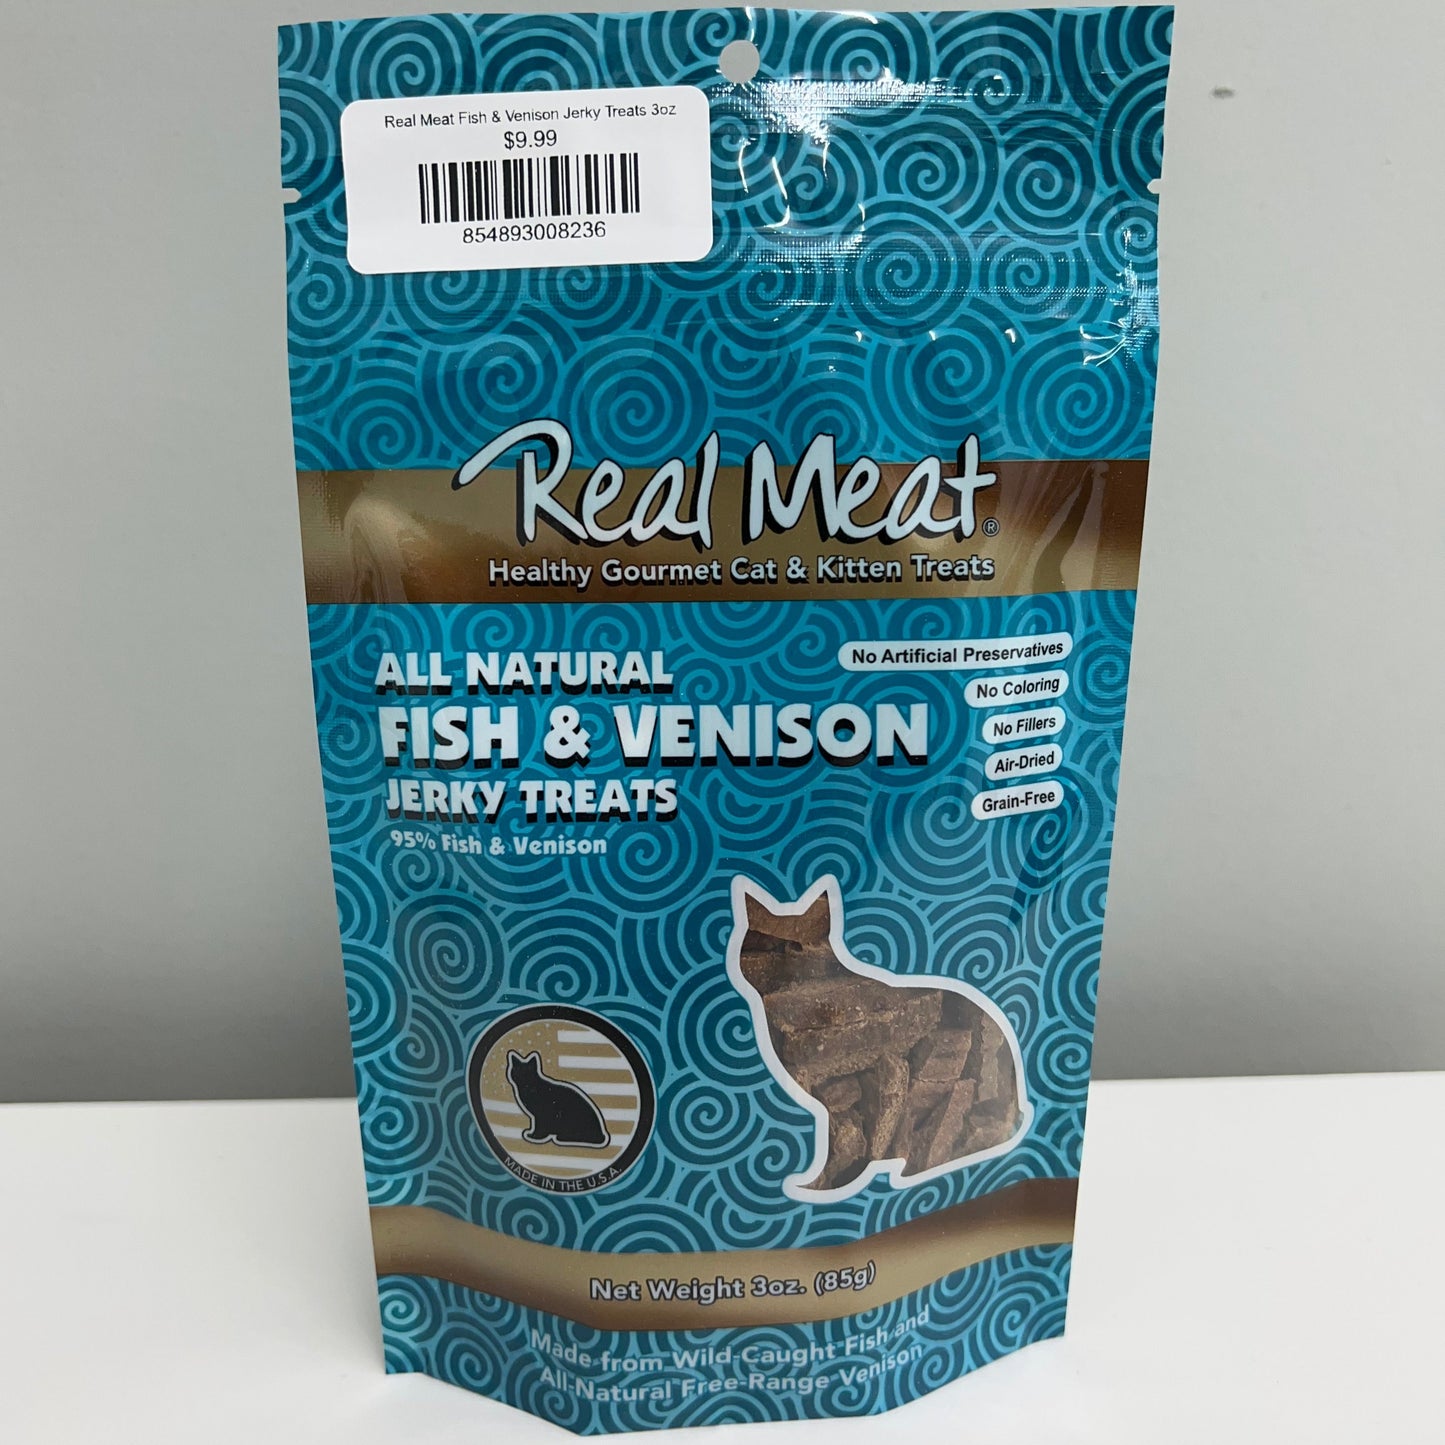 Real Meat Fish & Venison Jerky Treats 3oz